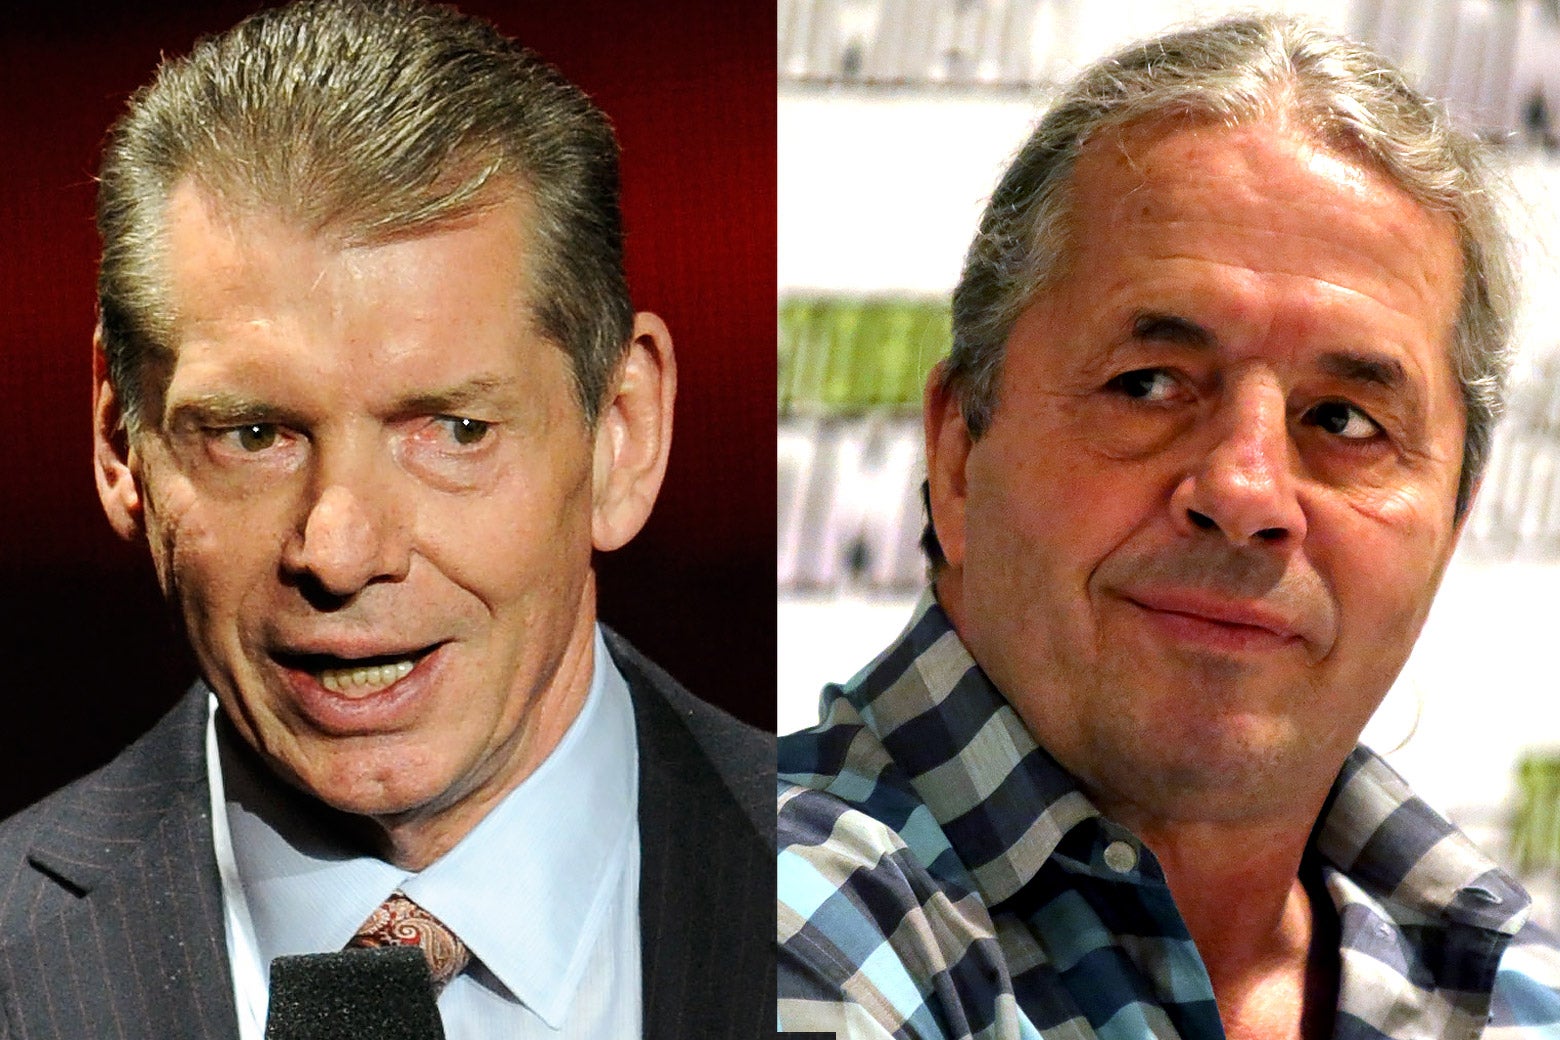 Left: Vince McMahon. Right: Bret Hart.